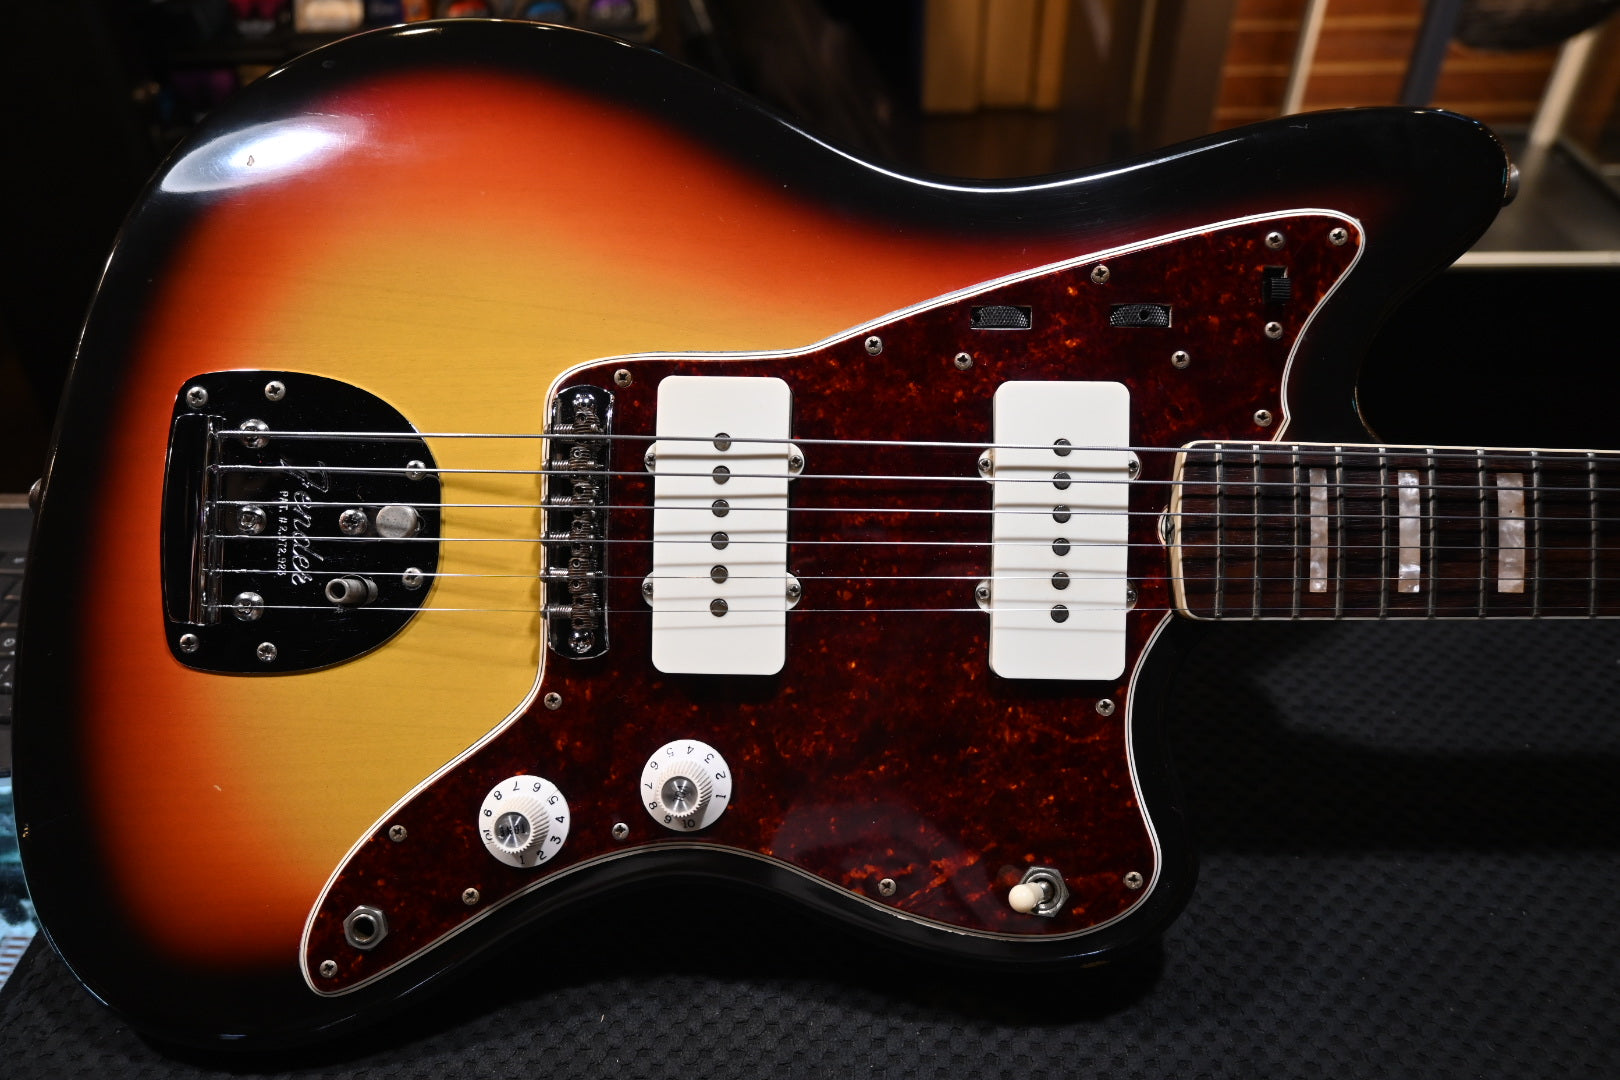 Fender Jazzmaster 1966 - 3-Color Sunburst Guitar #9922 PRE-OWNED